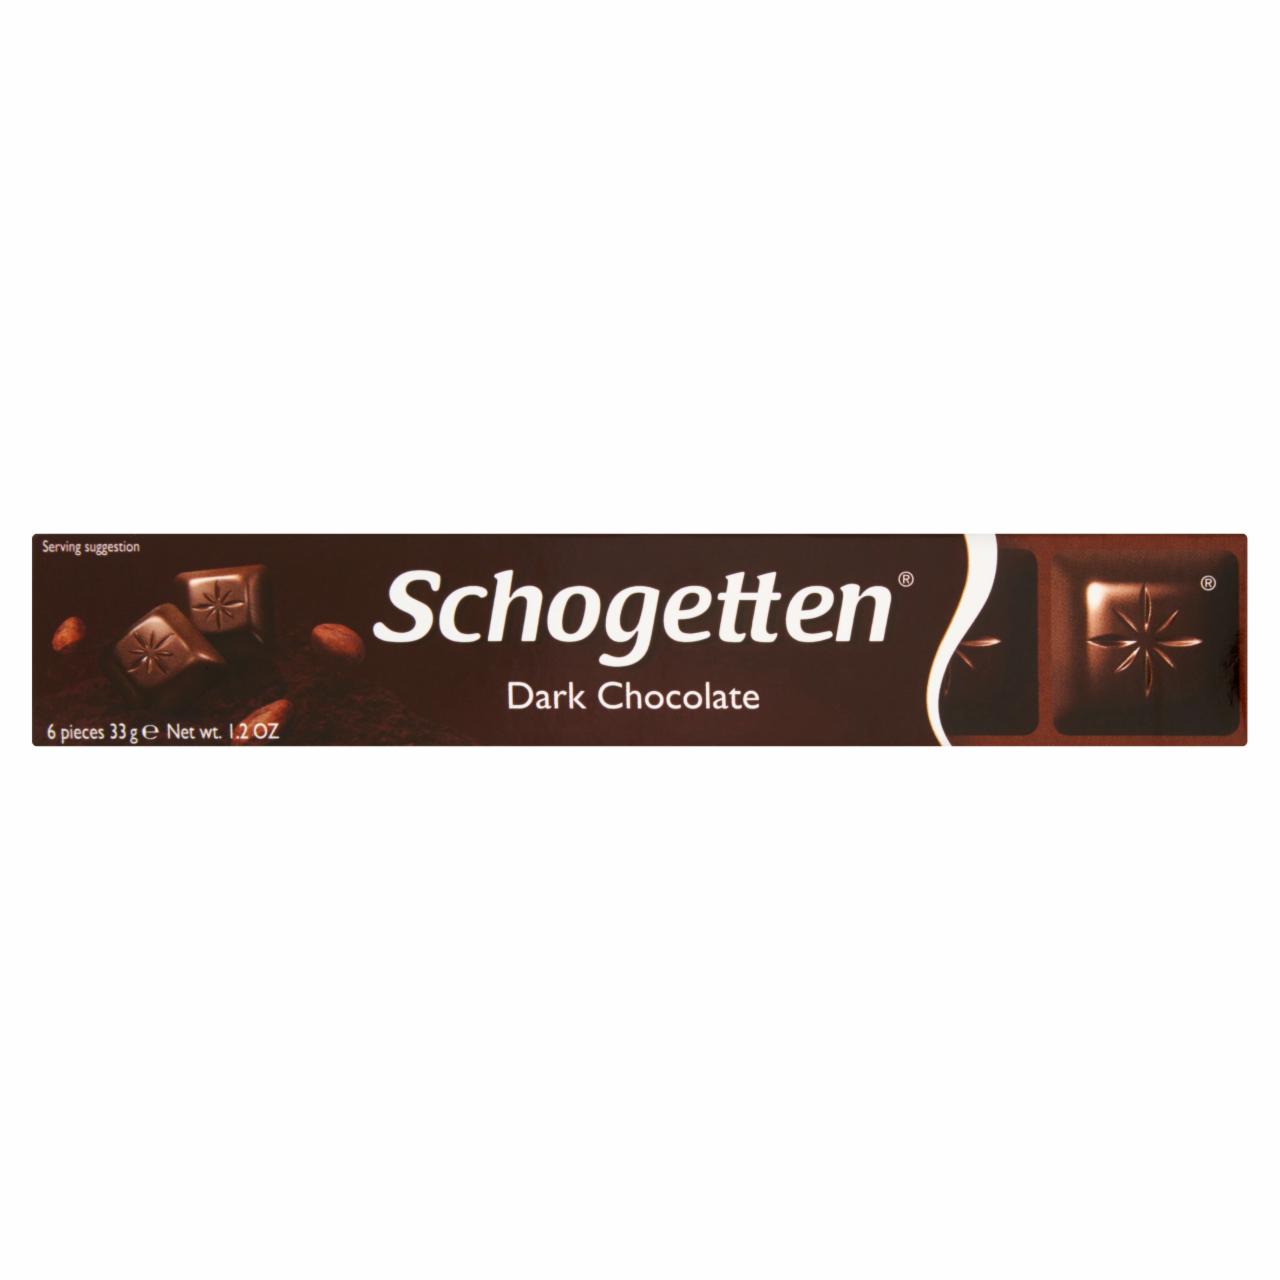 Zdjęcia - Schogetten Dark Chocolate Czekolada 33 g